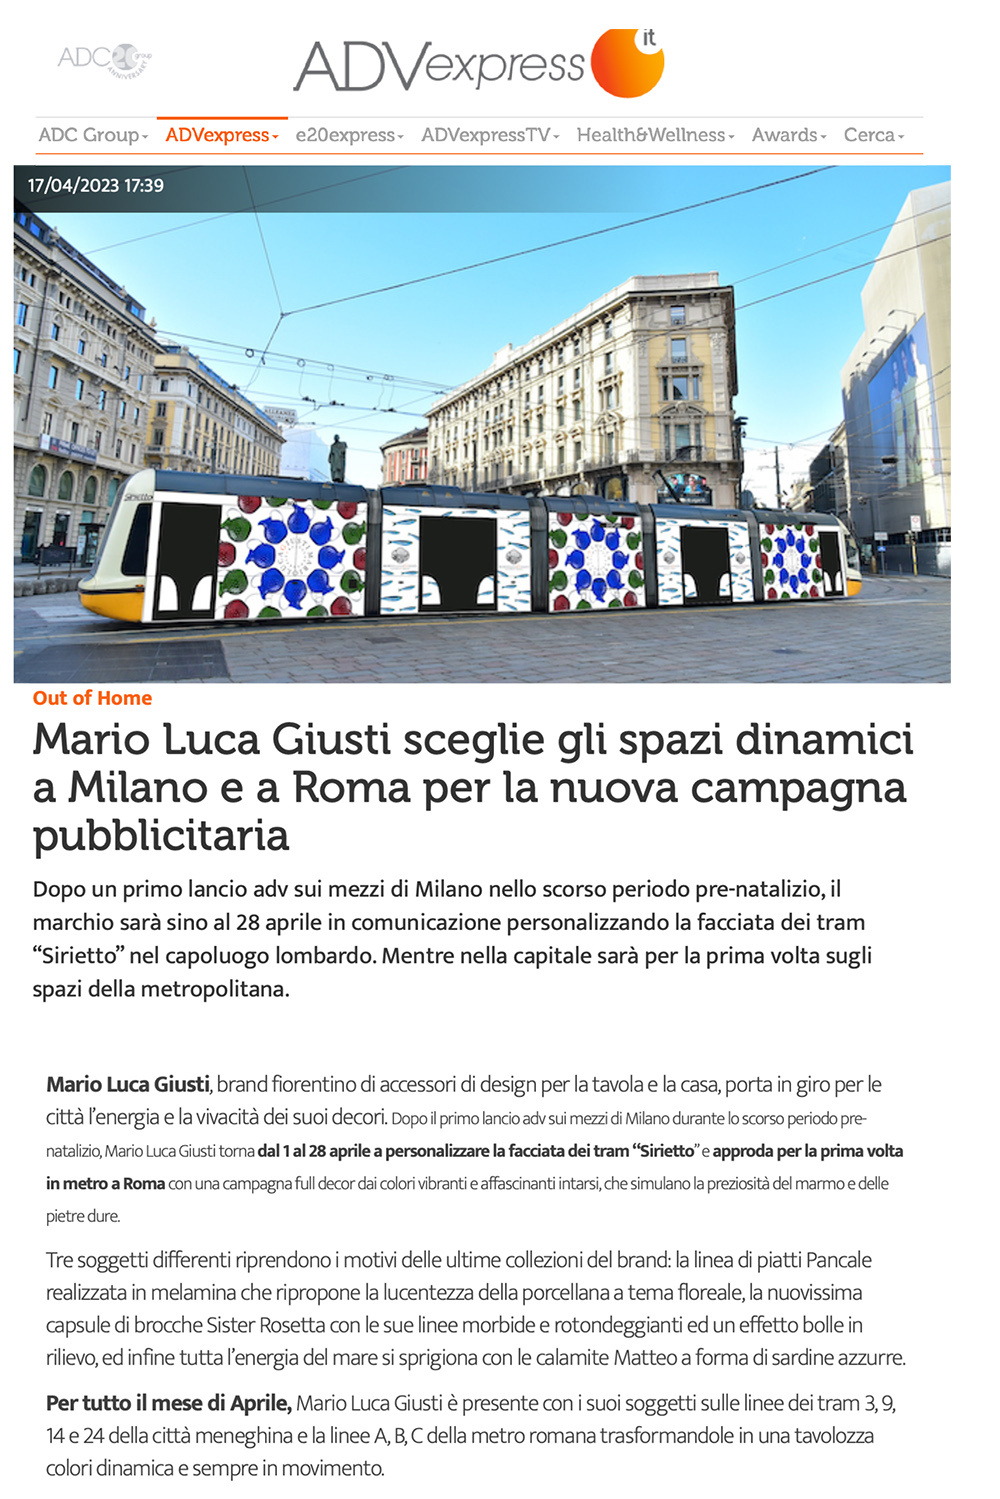 Mario Luca Giusti Sceglie Gli Spazi Dinamici a Milano e a Roma Per la Nuova Campagna Pubblicitaria 